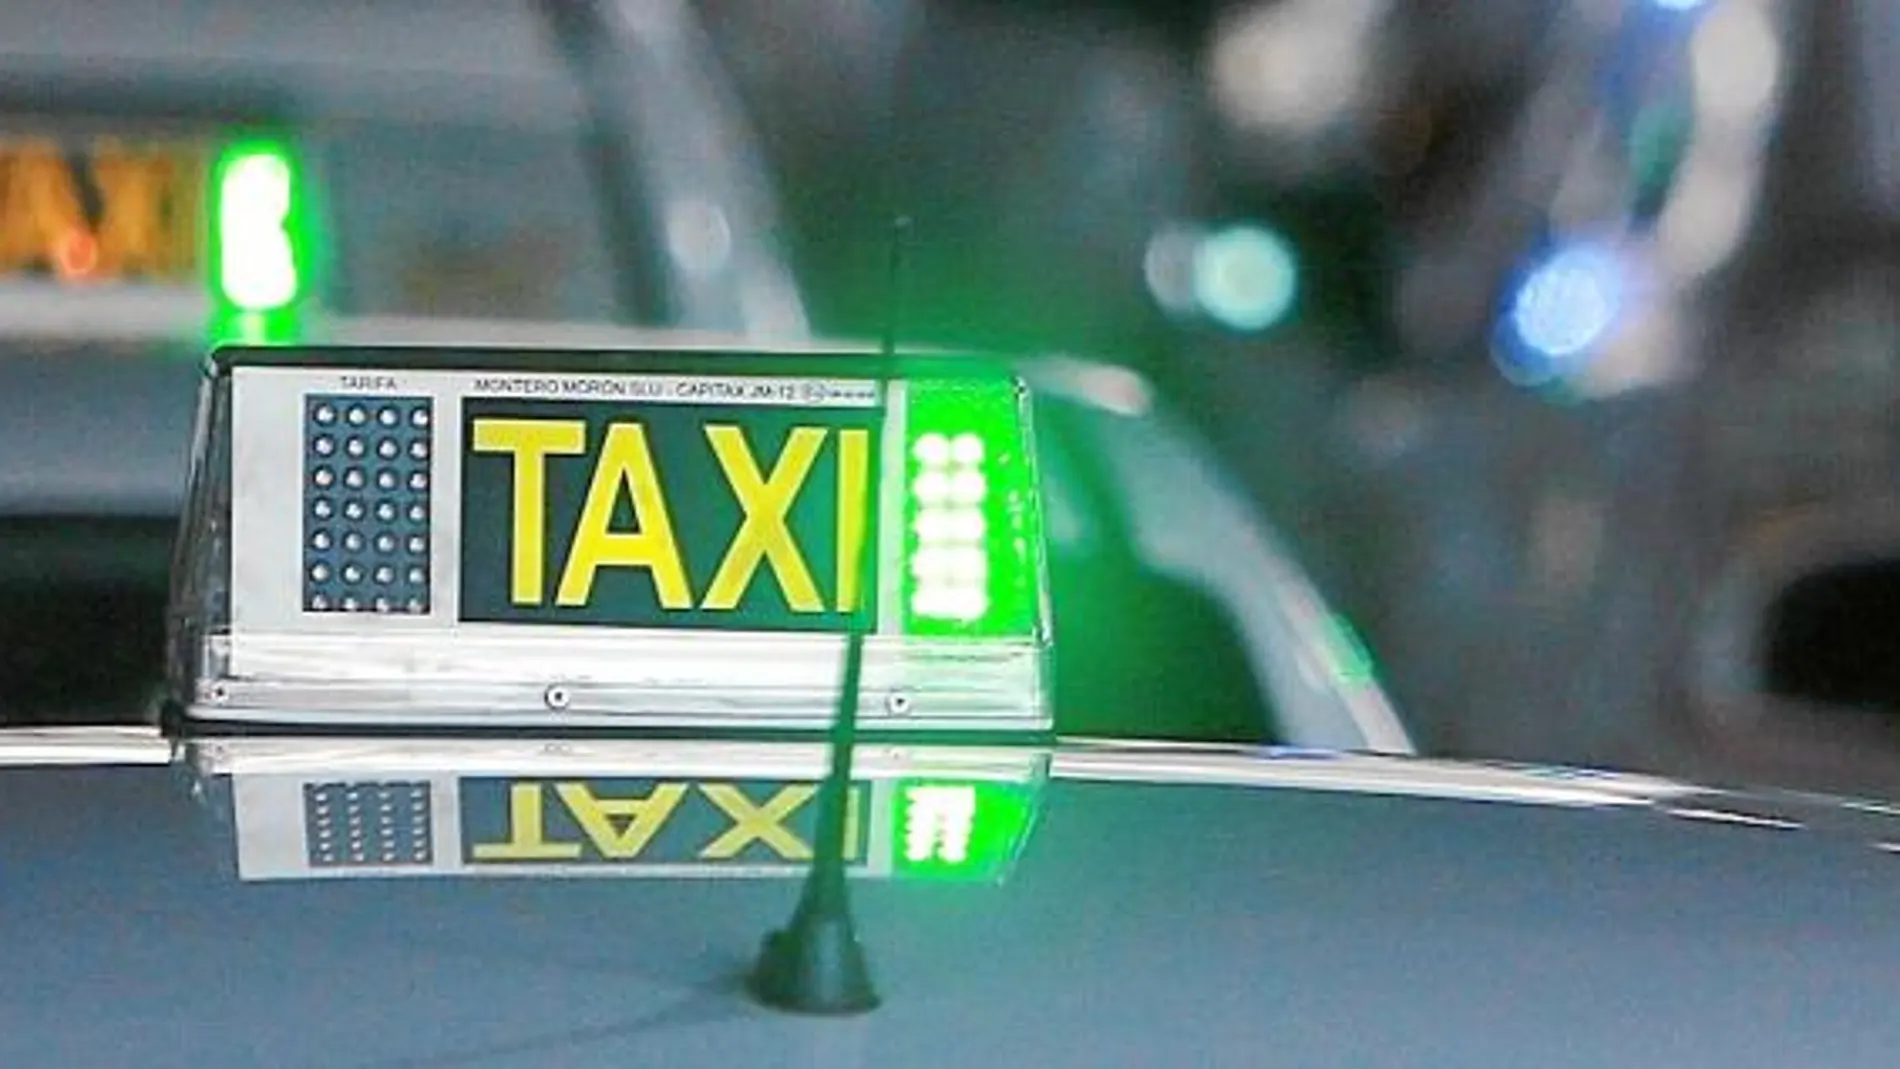 Preocupados por su posición como alternativa de transporte público en Madrid, varias asociaciones dentro del gremio del taxi están de acuerdo en bajar sus precios en casos especiales